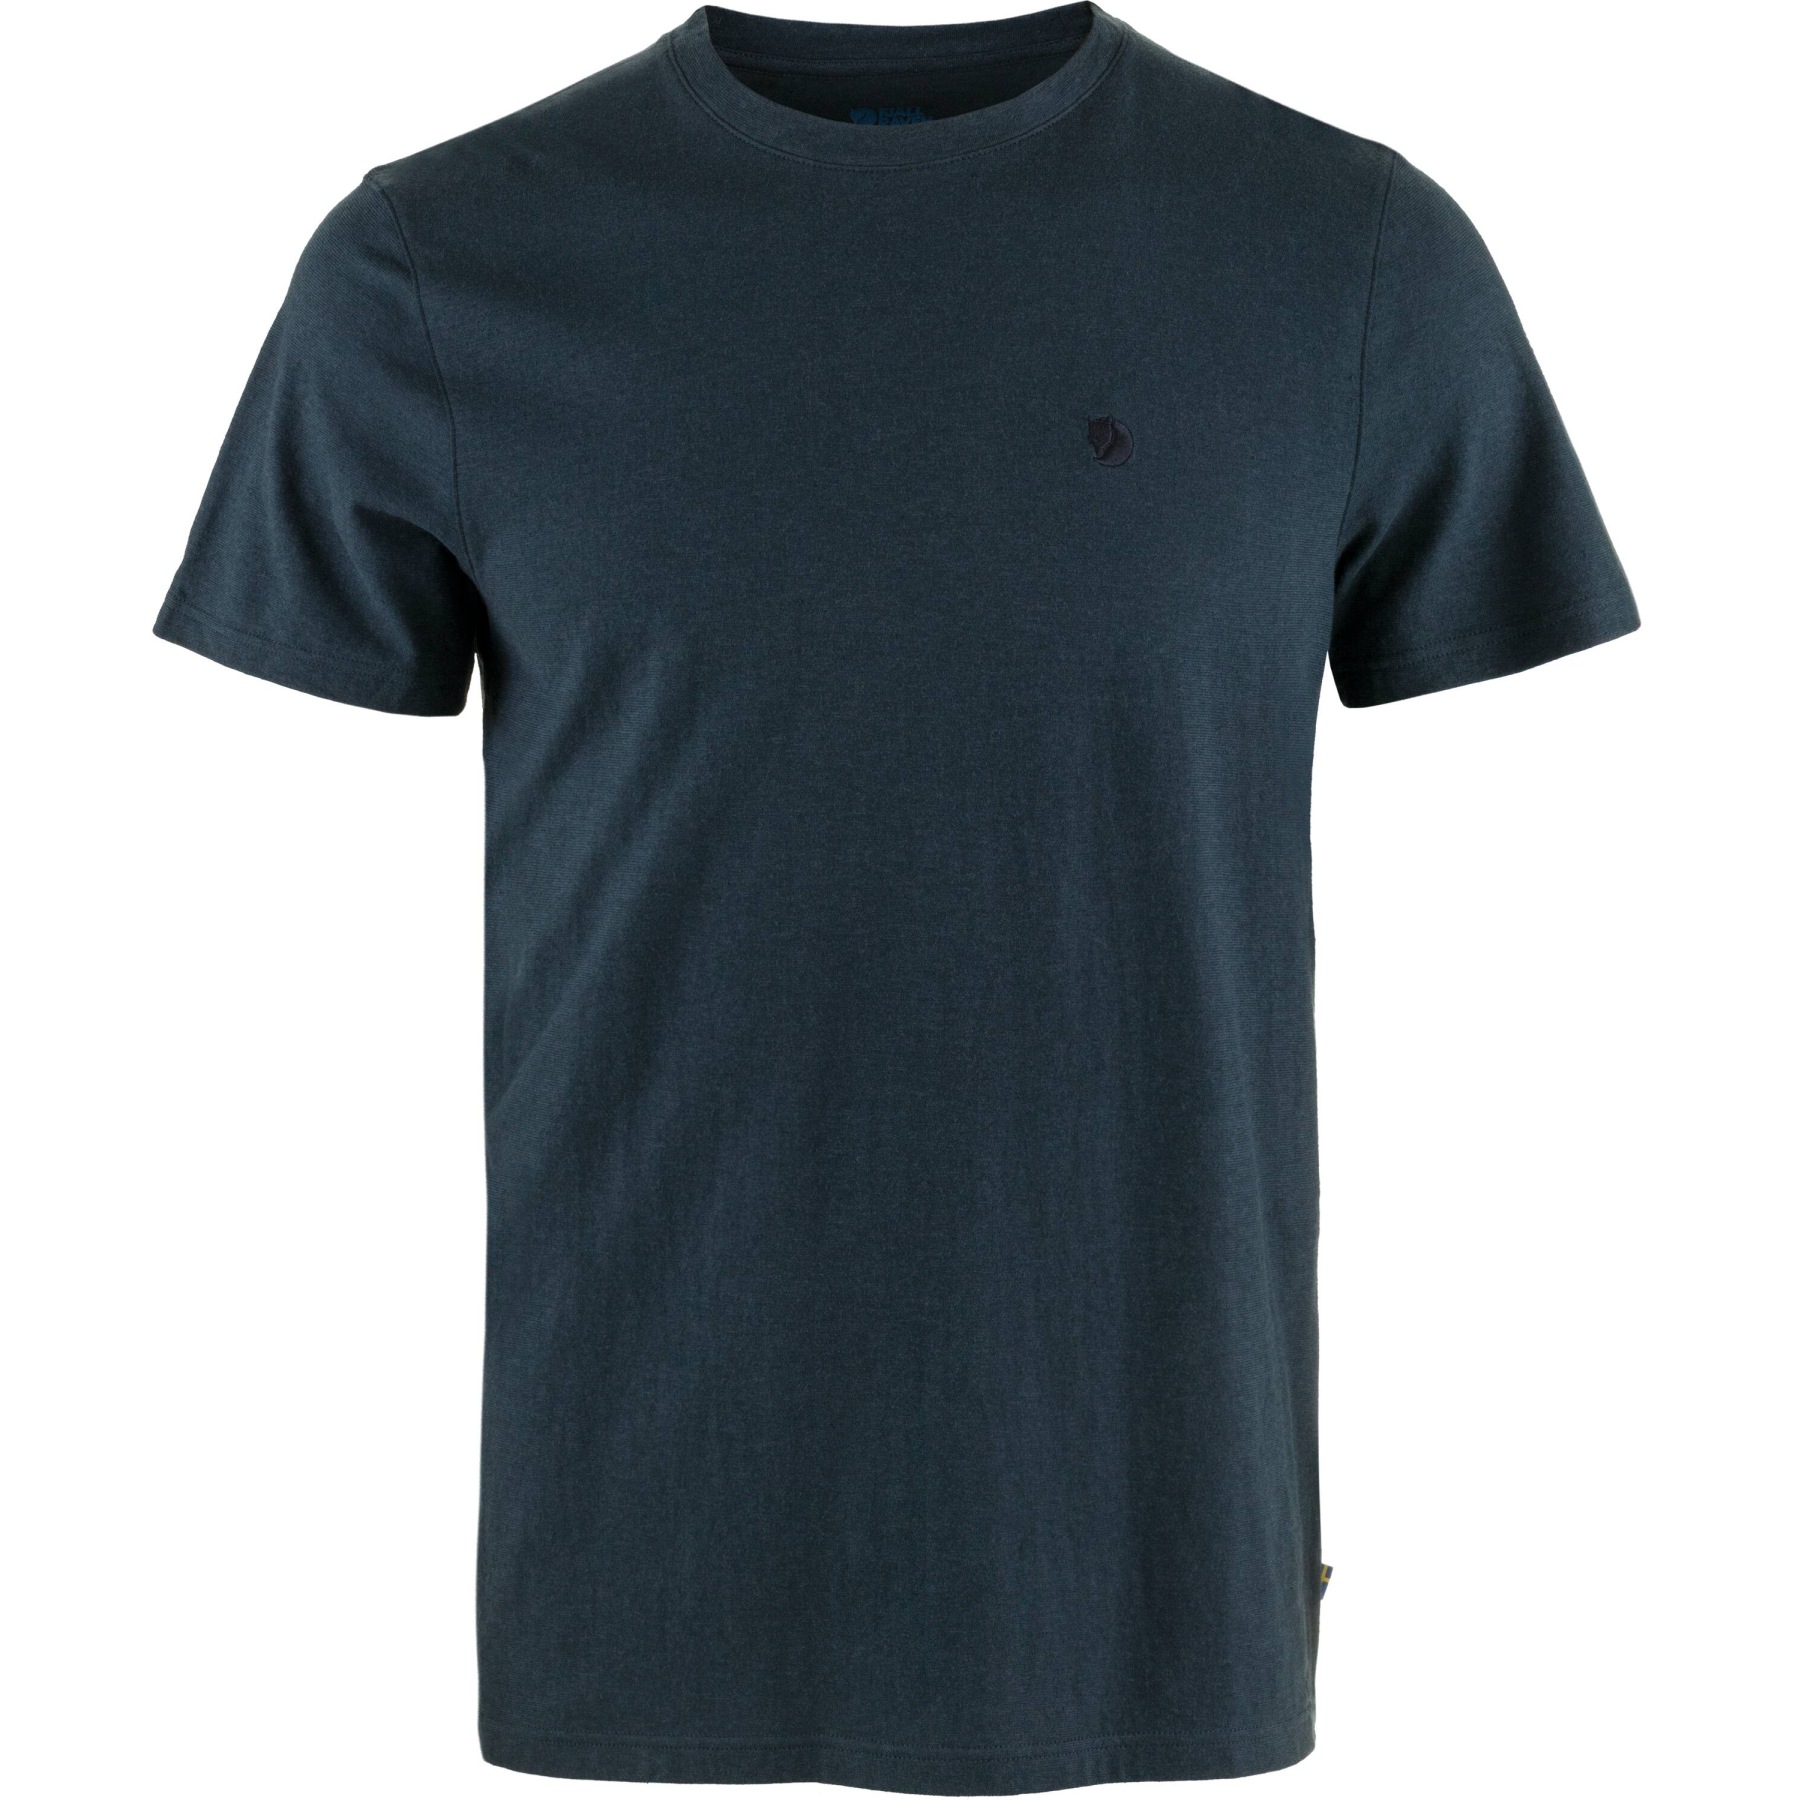 Produktbild von Fjällräven Hemp Blend T-Shirt Herren - dark navy